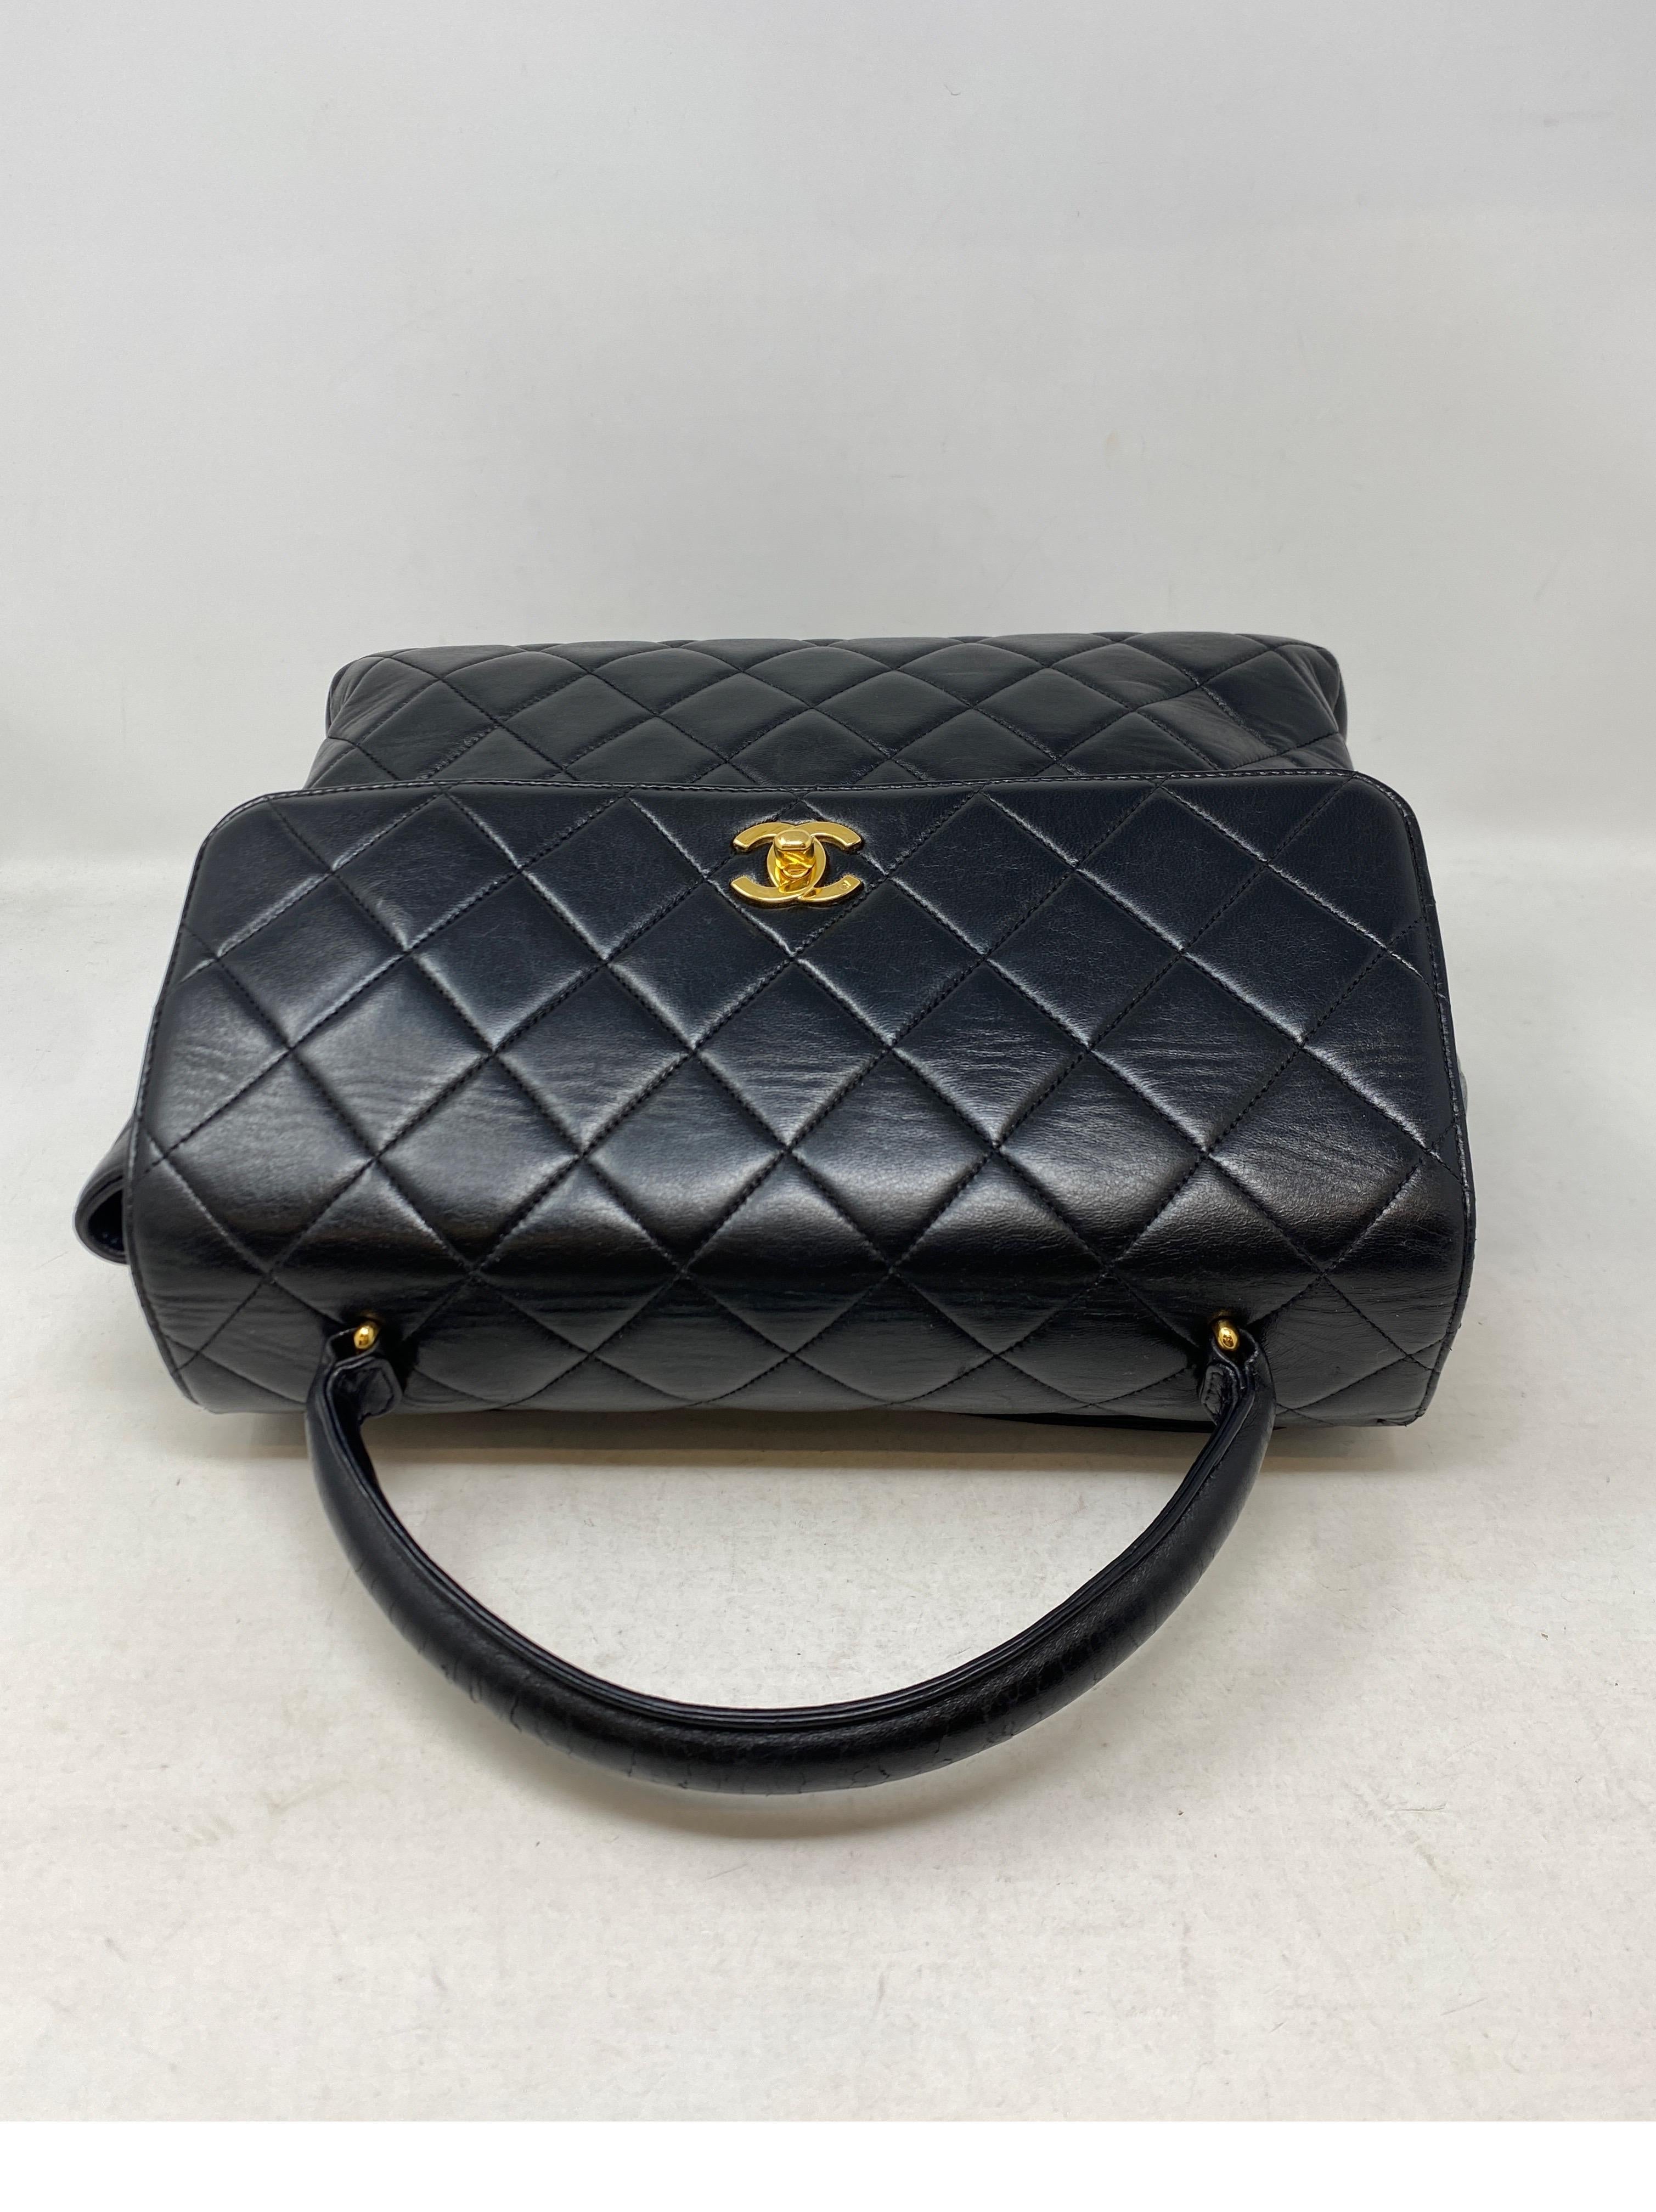 Women's or Men's Chanel Vintage Black Kelly Bag 